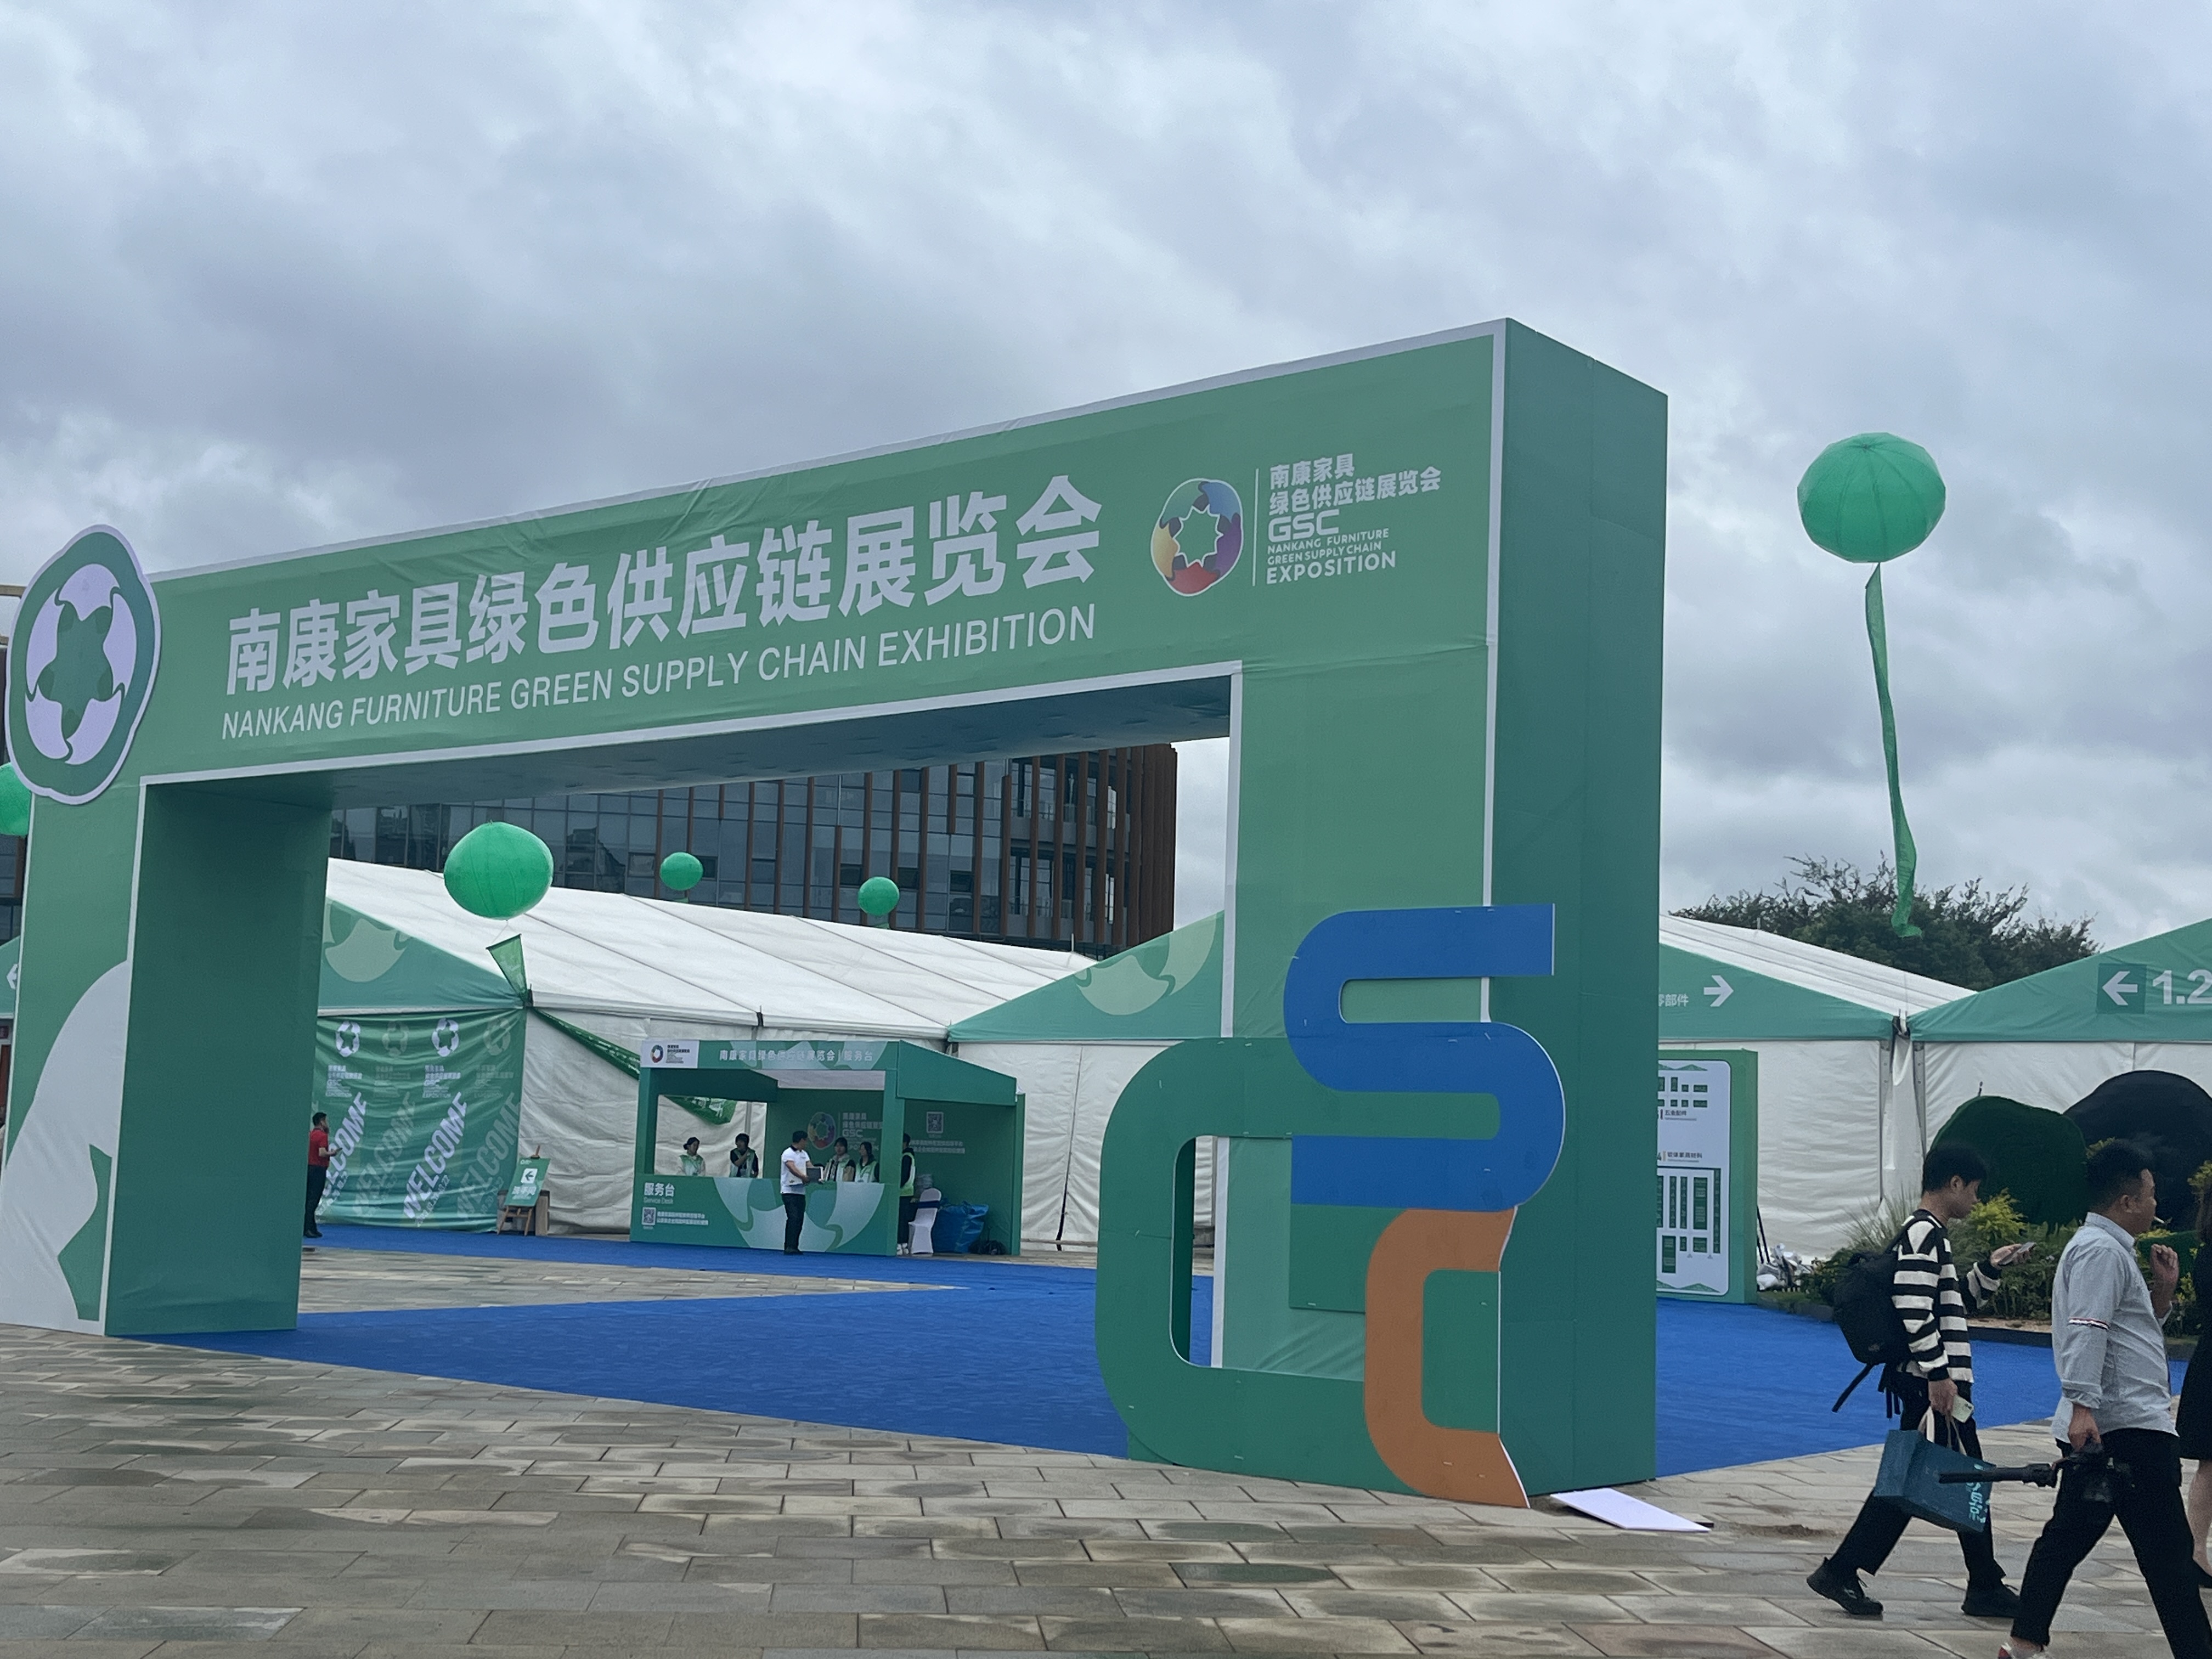 FB体育(中国)官方网站股份参加首届南康家具绿色供应链展览会